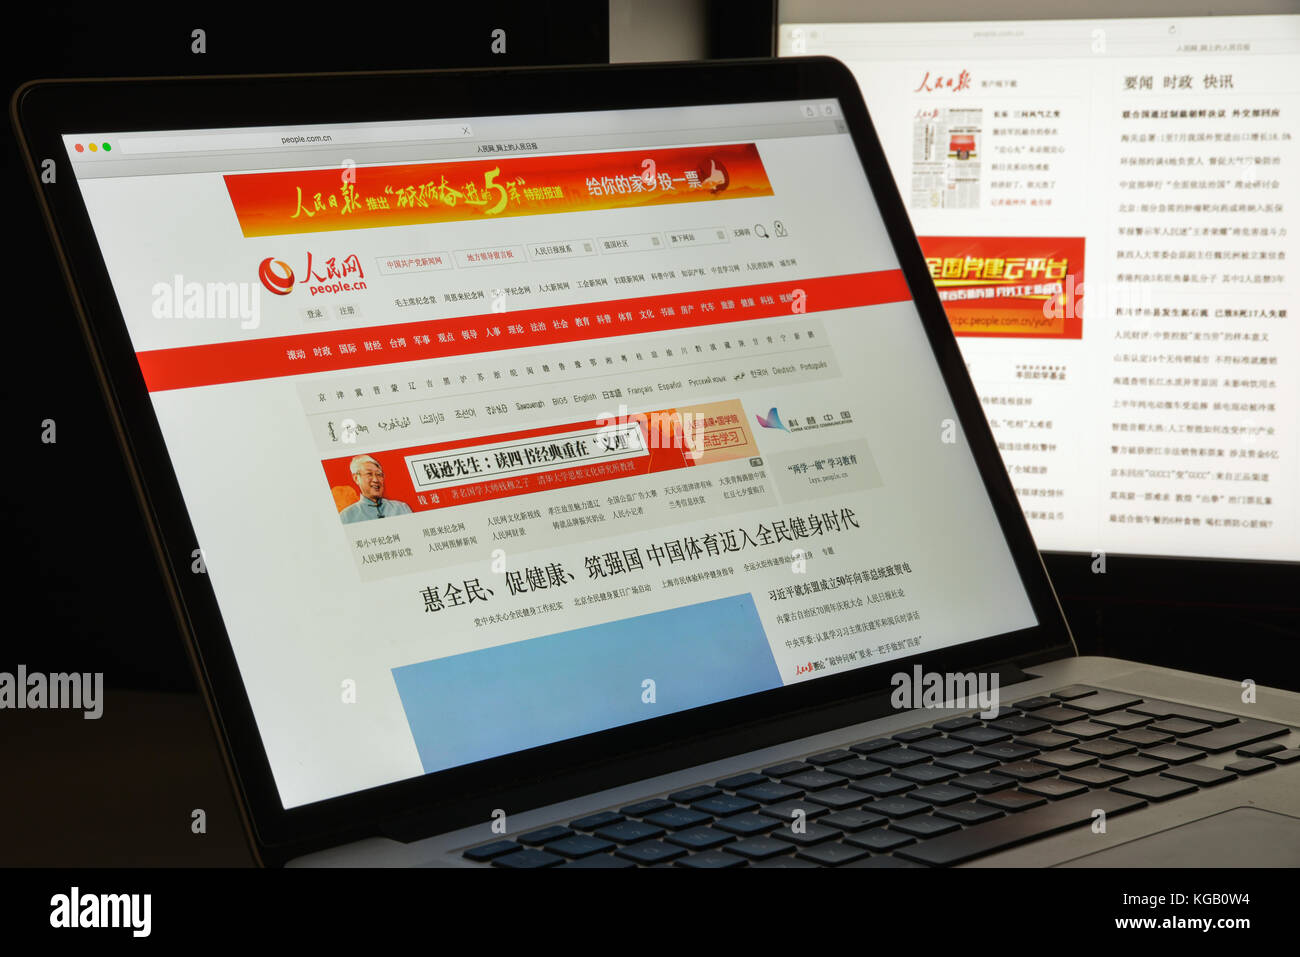 Mailand, Italien - 10 August 2017: people.com.cn täglich oder Renmin ribao der Menschen ist die größte Zeitung Gruppe in China. Homepage. Stockfoto